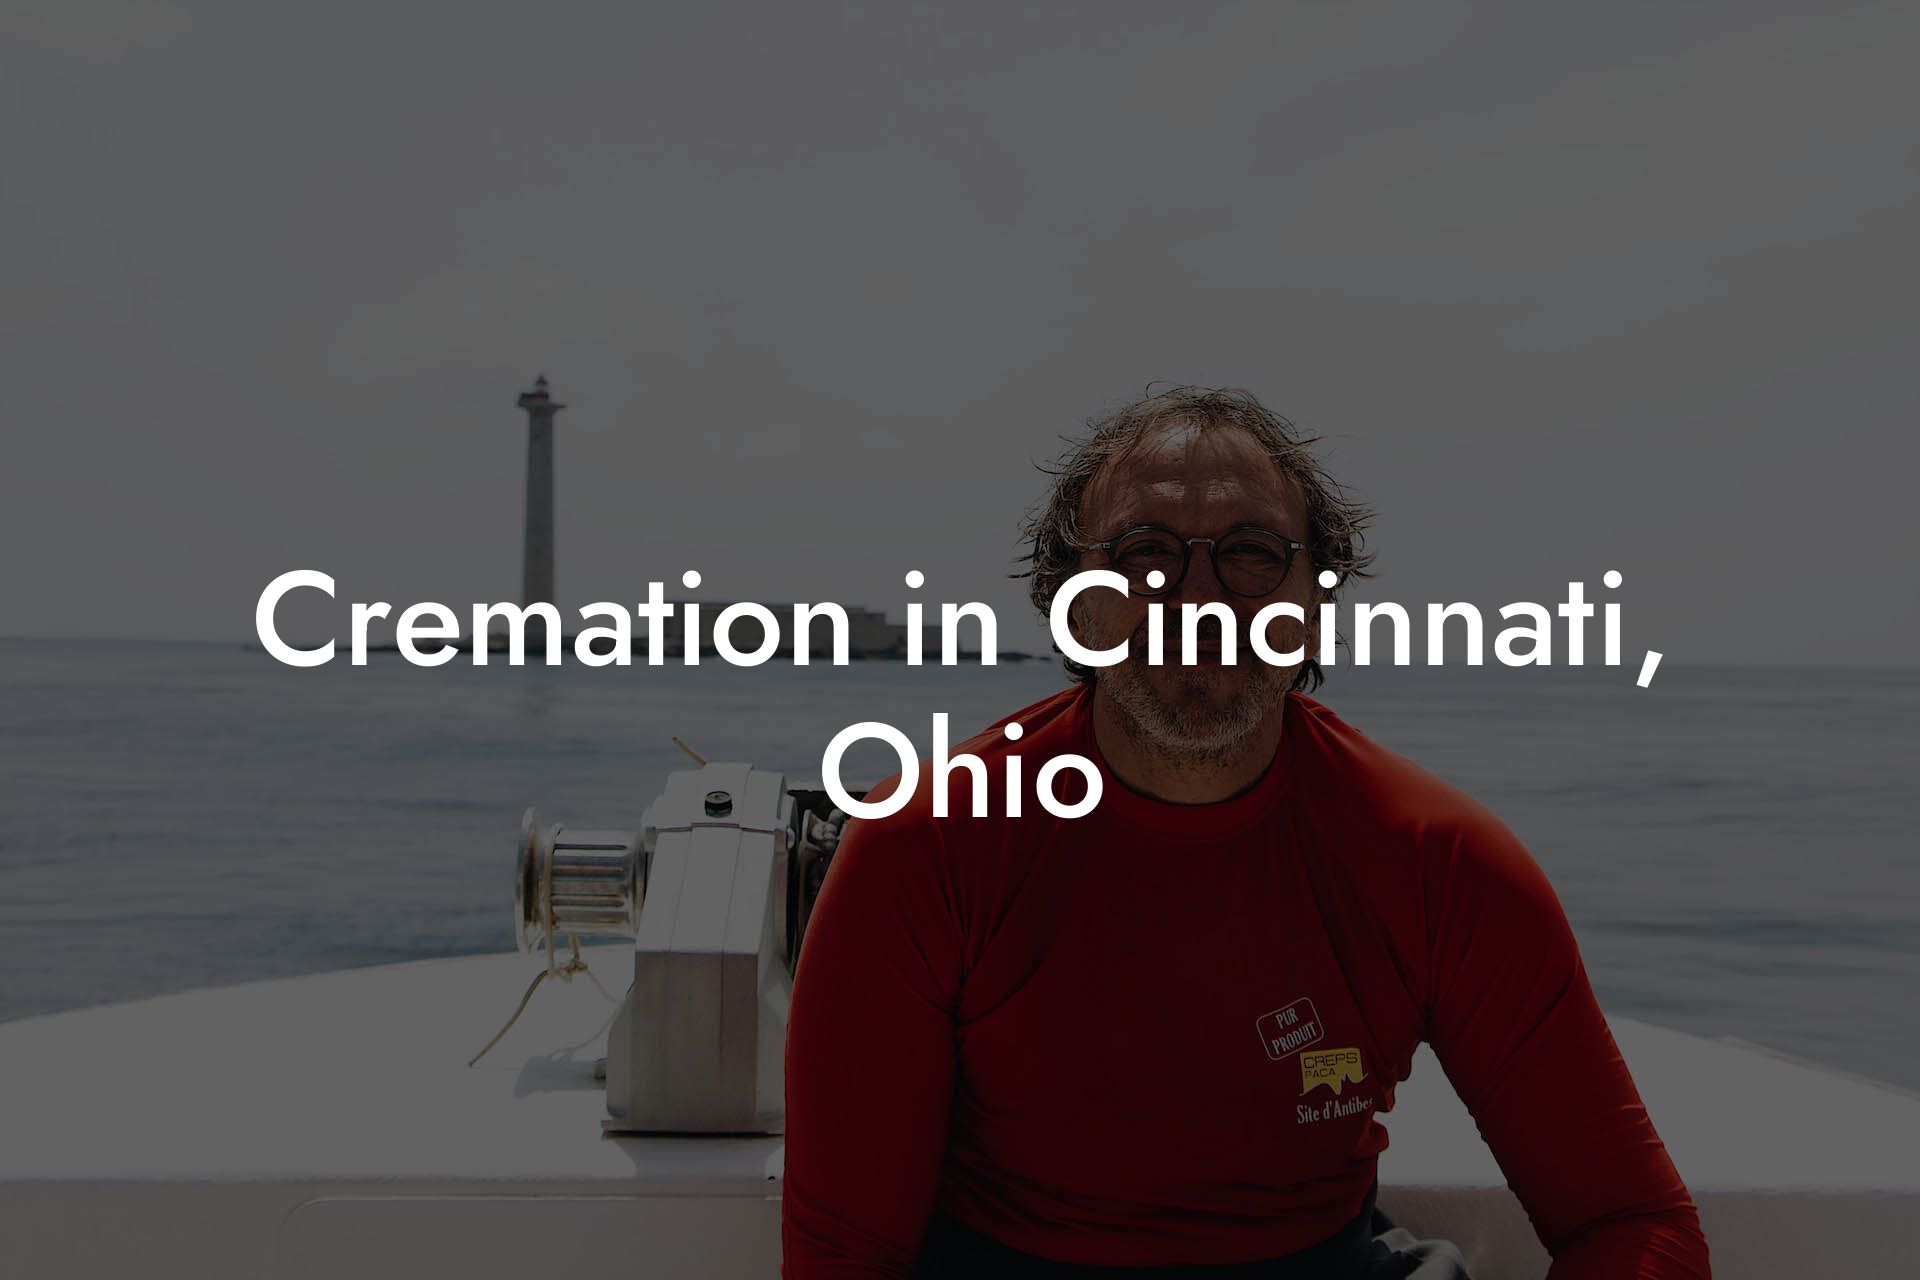 Cremation in Cincinnati, Ohio